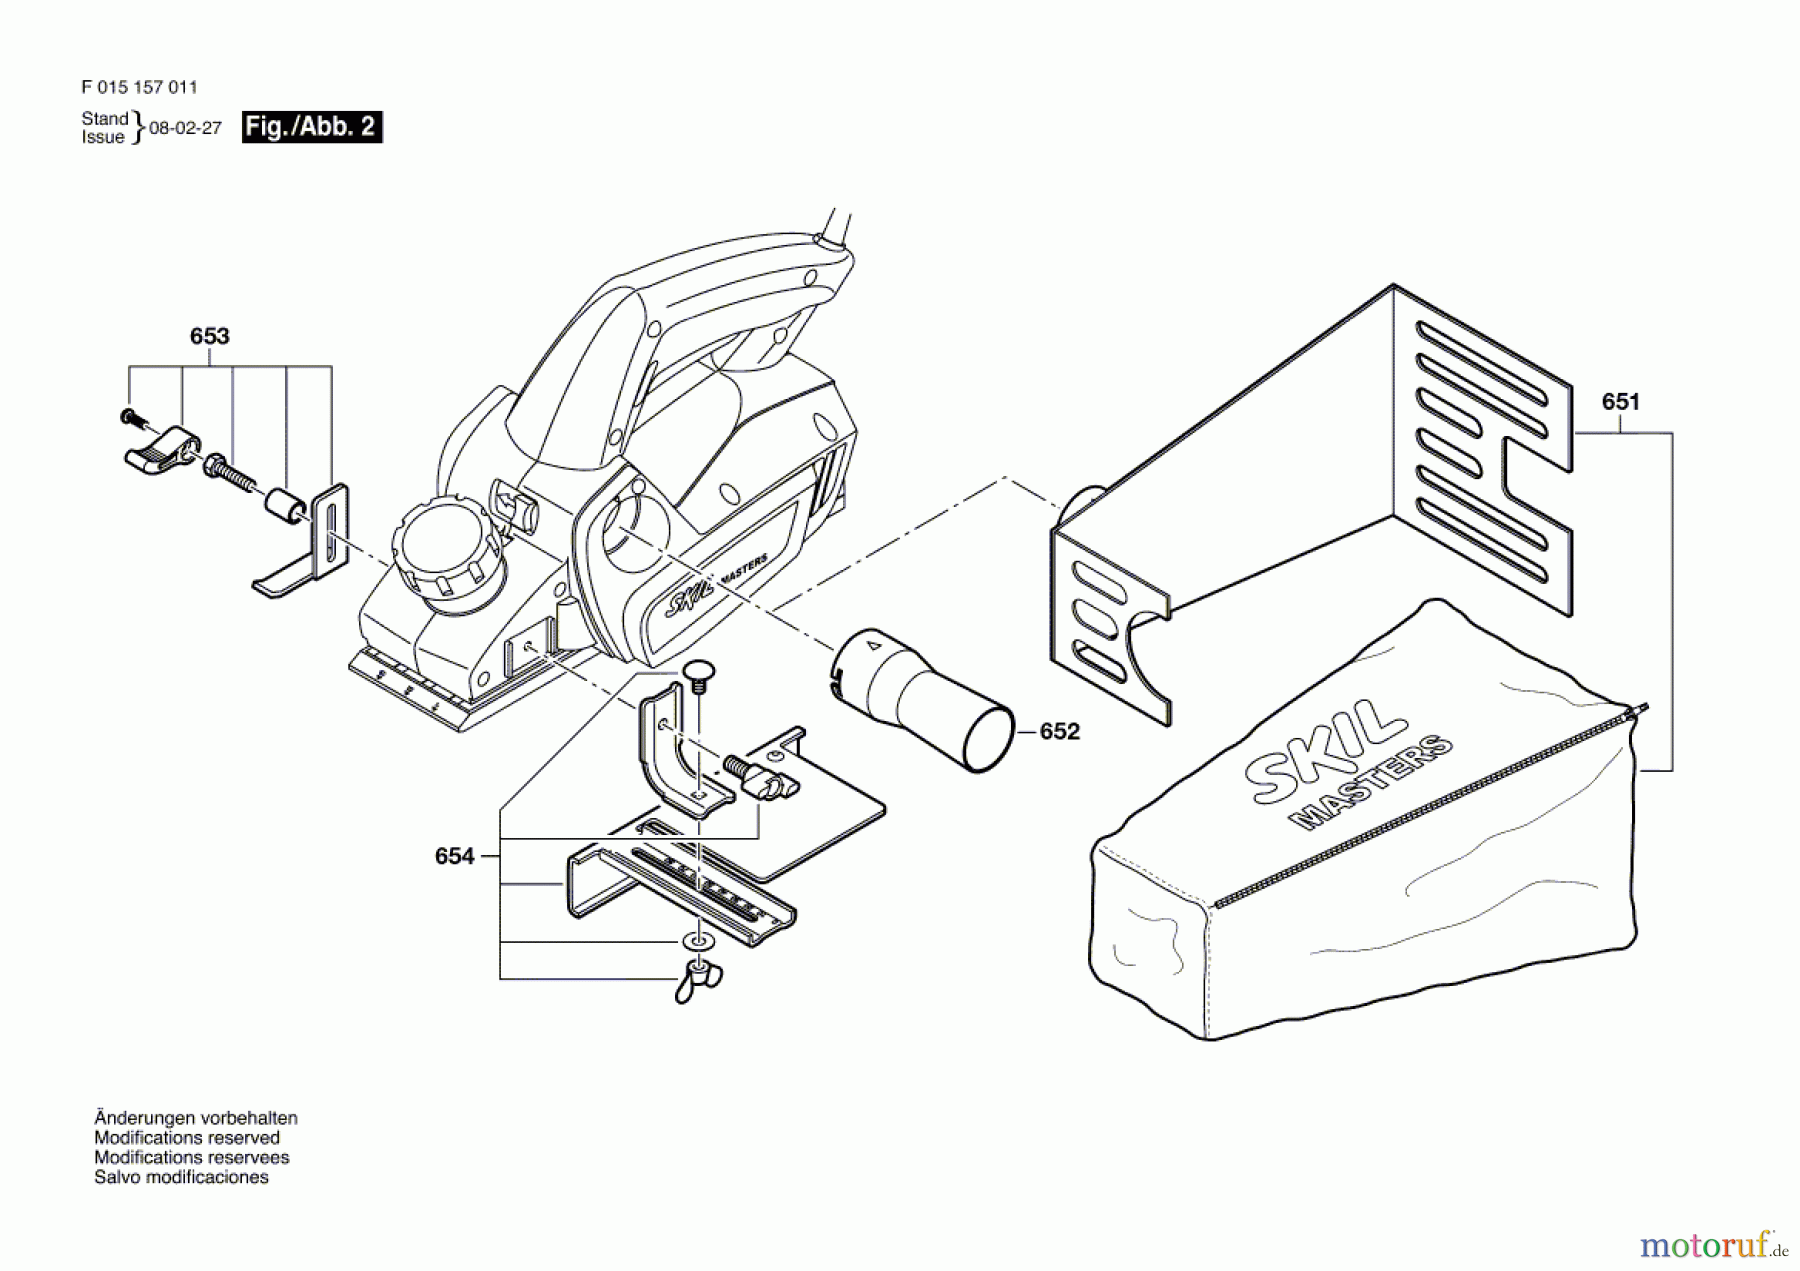  Bosch Werkzeug Handhobel 1570 Seite 2